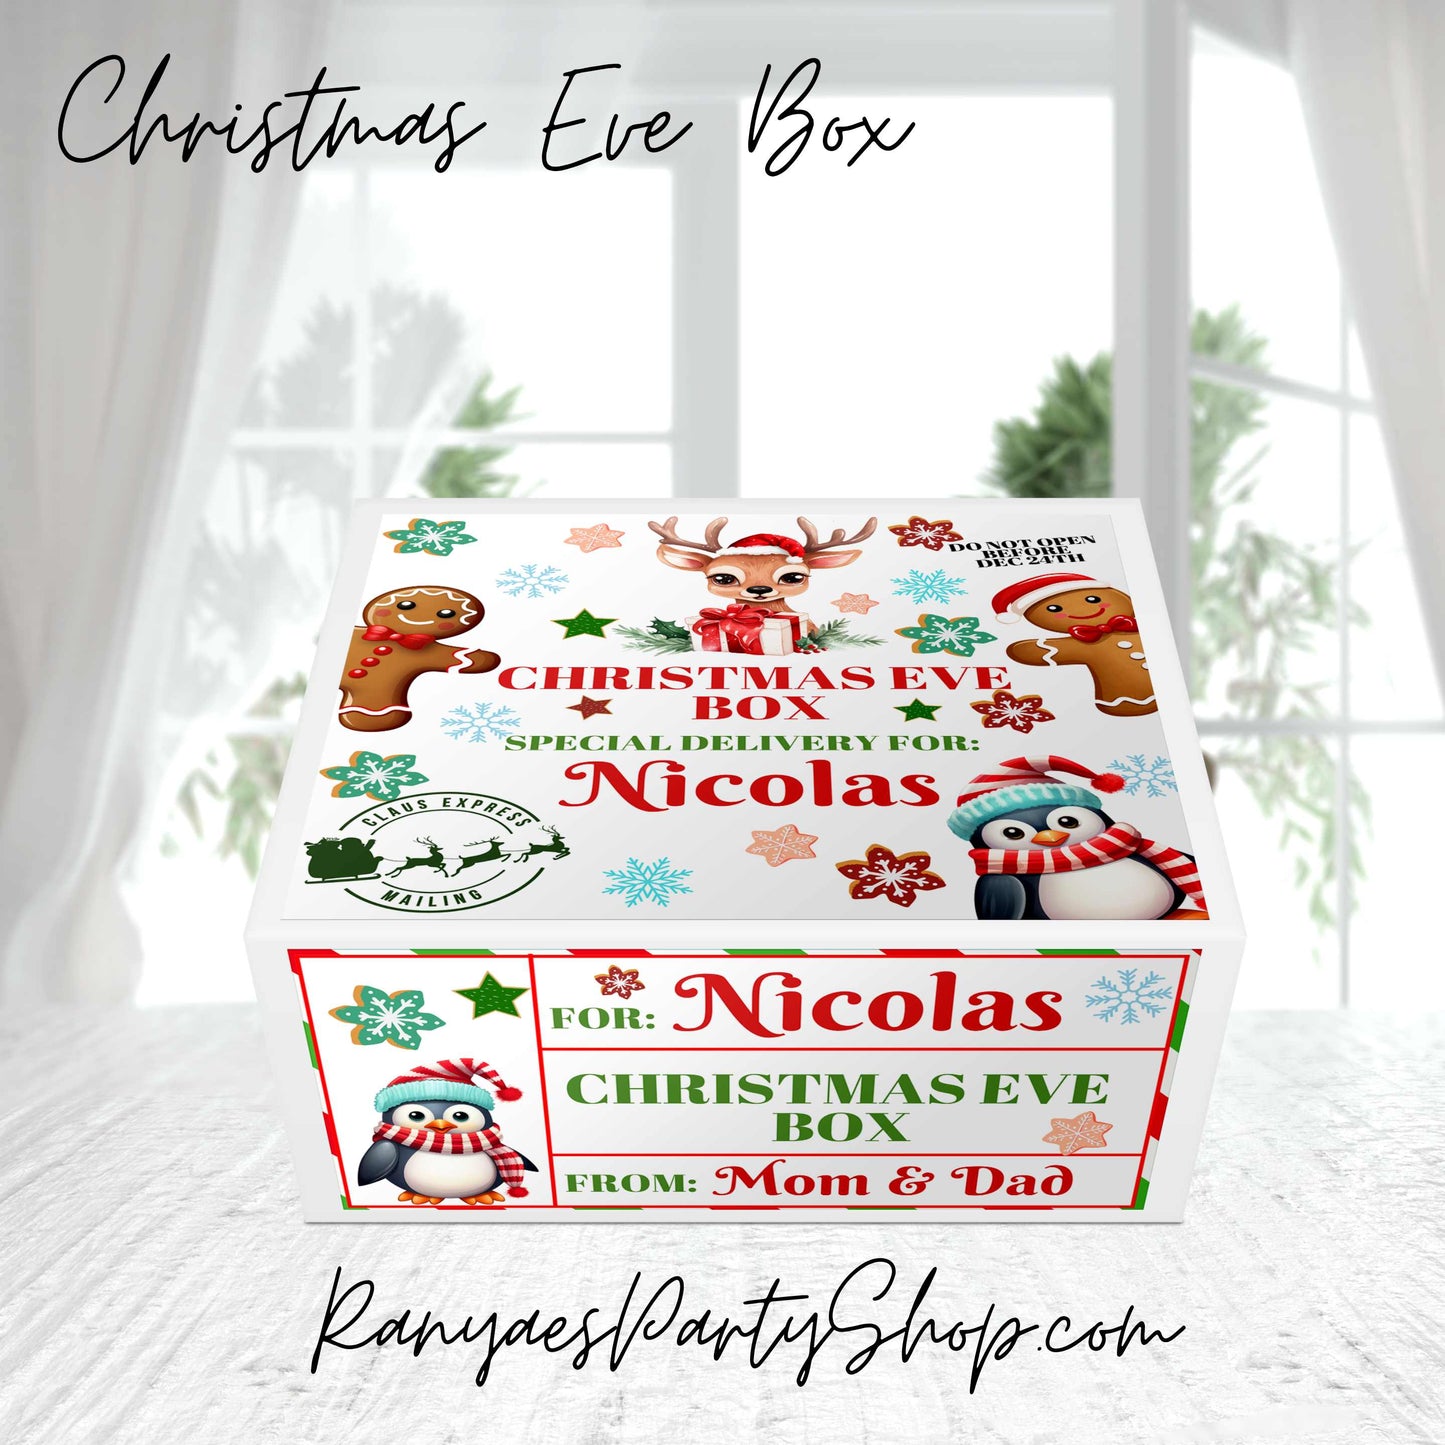 Christmas Eve Box | Christmas Gifts | Christmas Eve Gift Box | Shipped Box Only